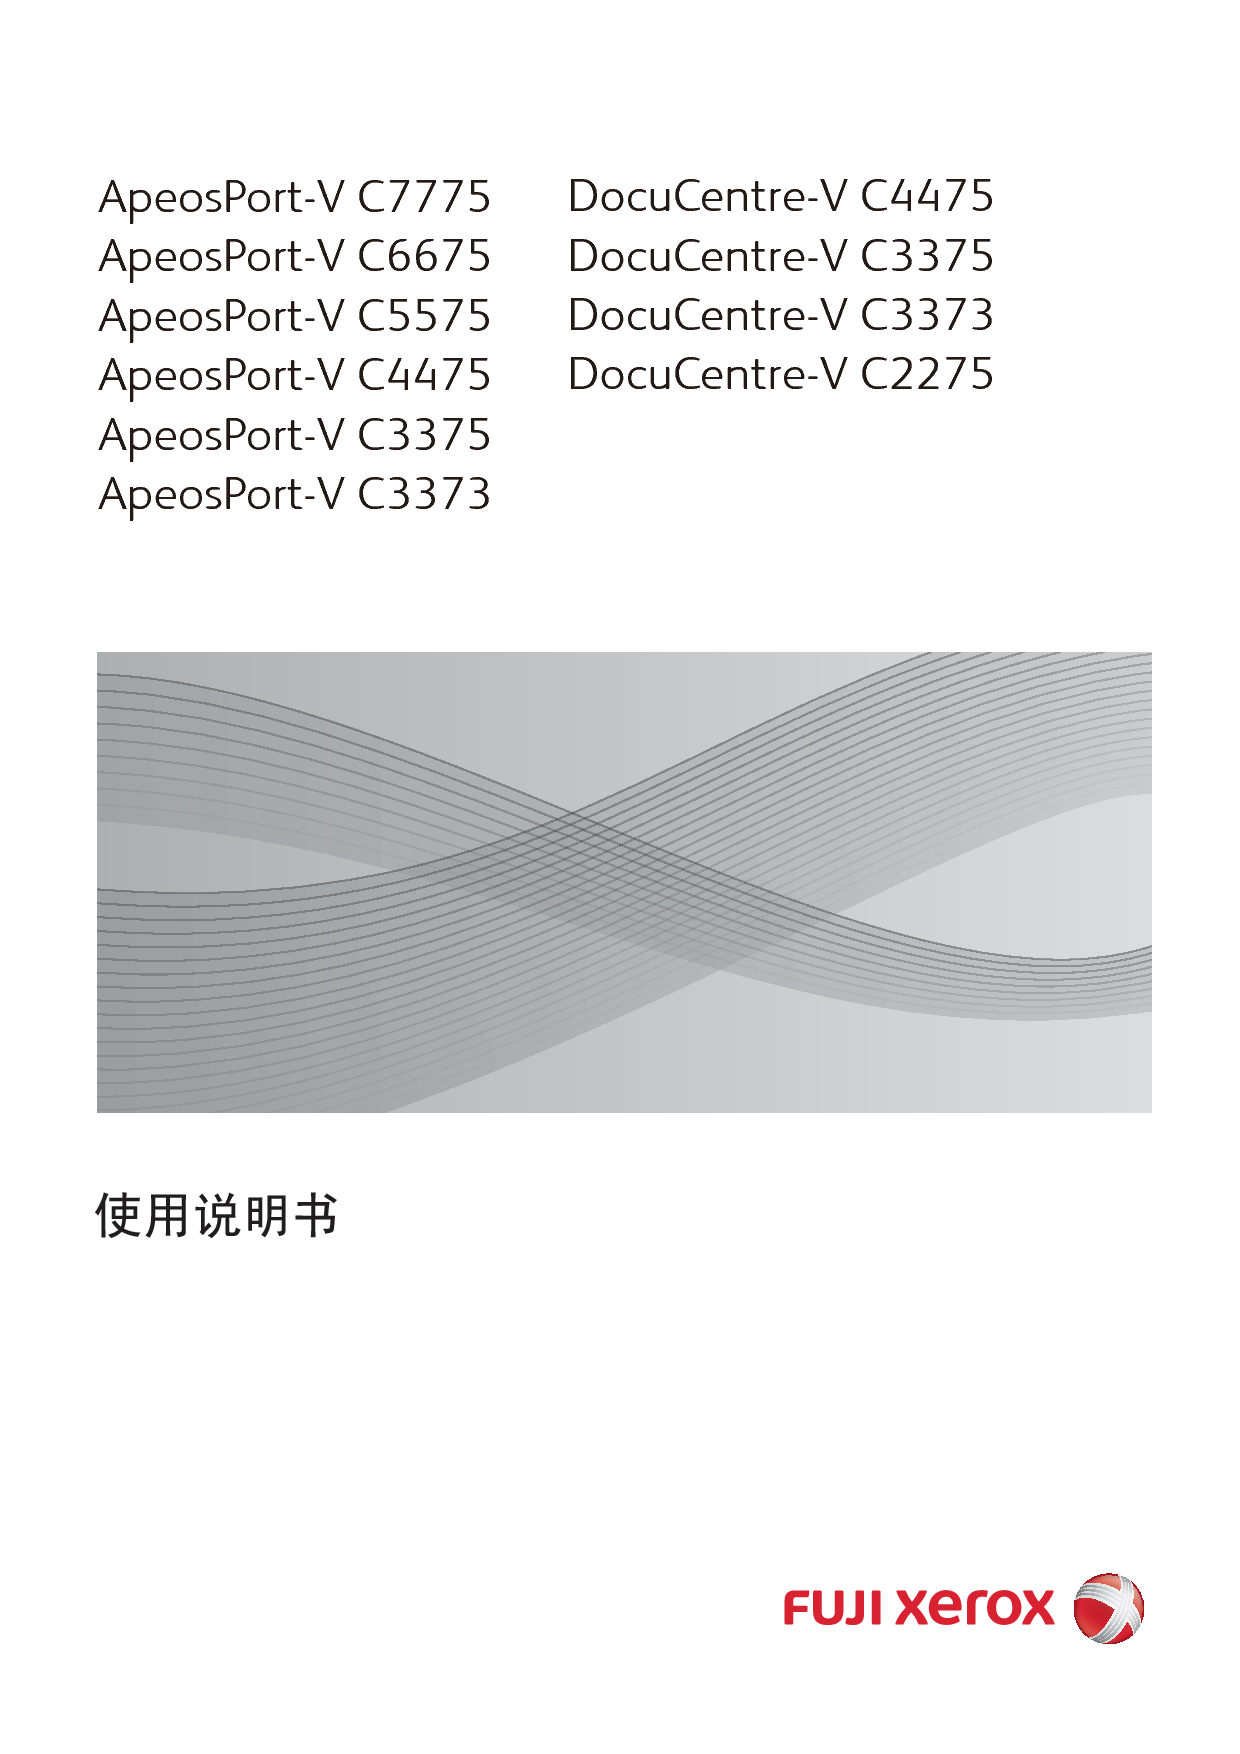 富士施乐 Fuji Xerox ApeosPort-V C2275, DocuCentre-V C2275 使用说明书 封面